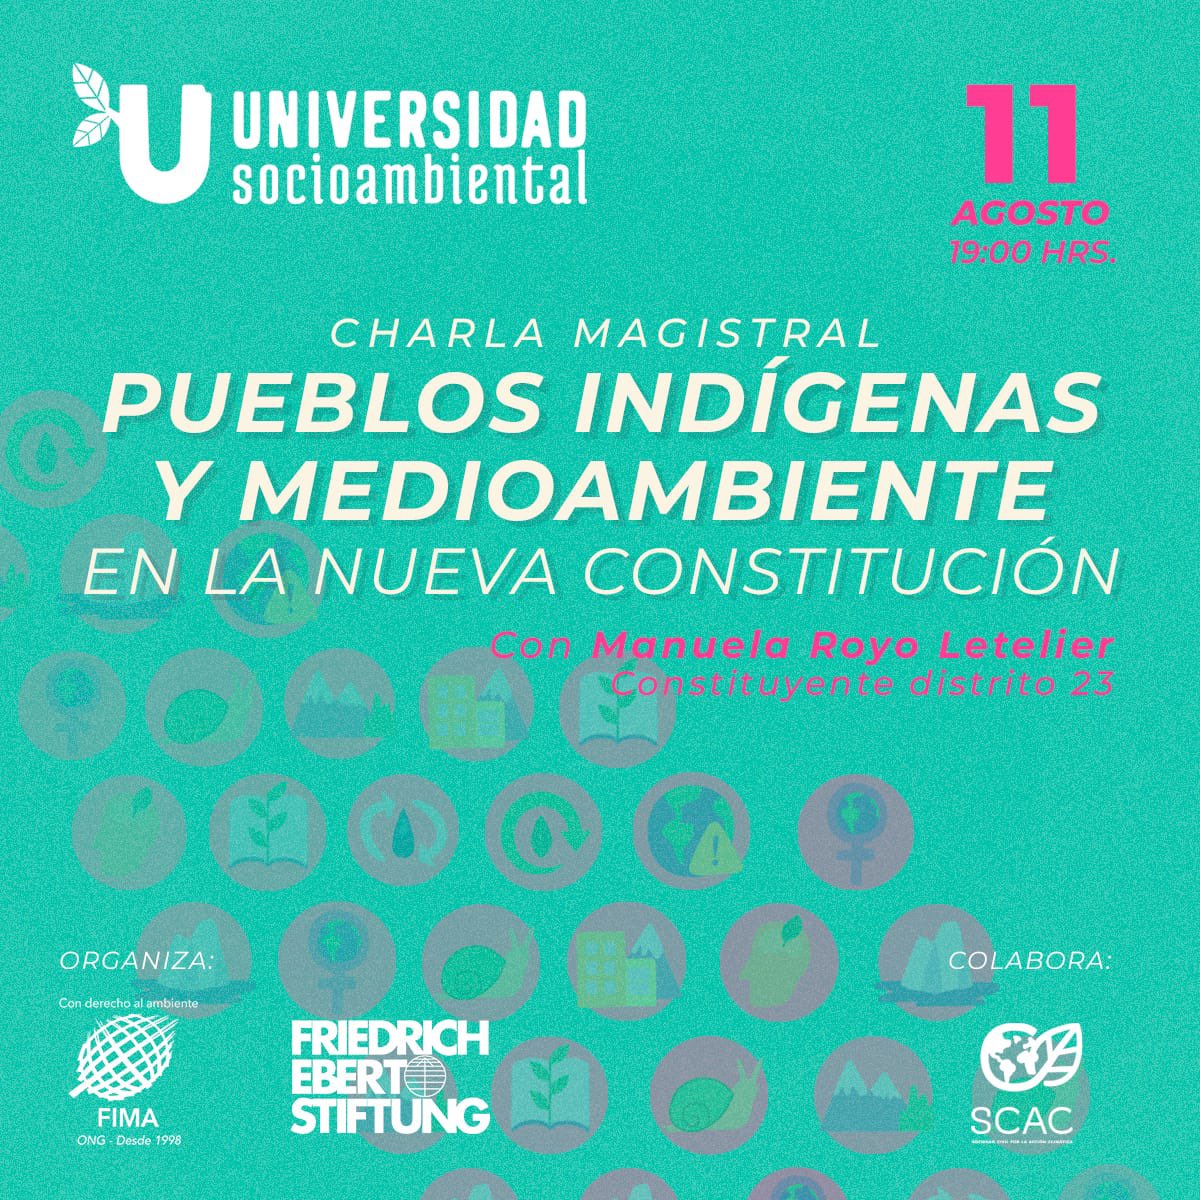 ONG FIMA invita a la Cátedra Magistral "Pueblos indígenas y medioambiente en la nueva constitución”